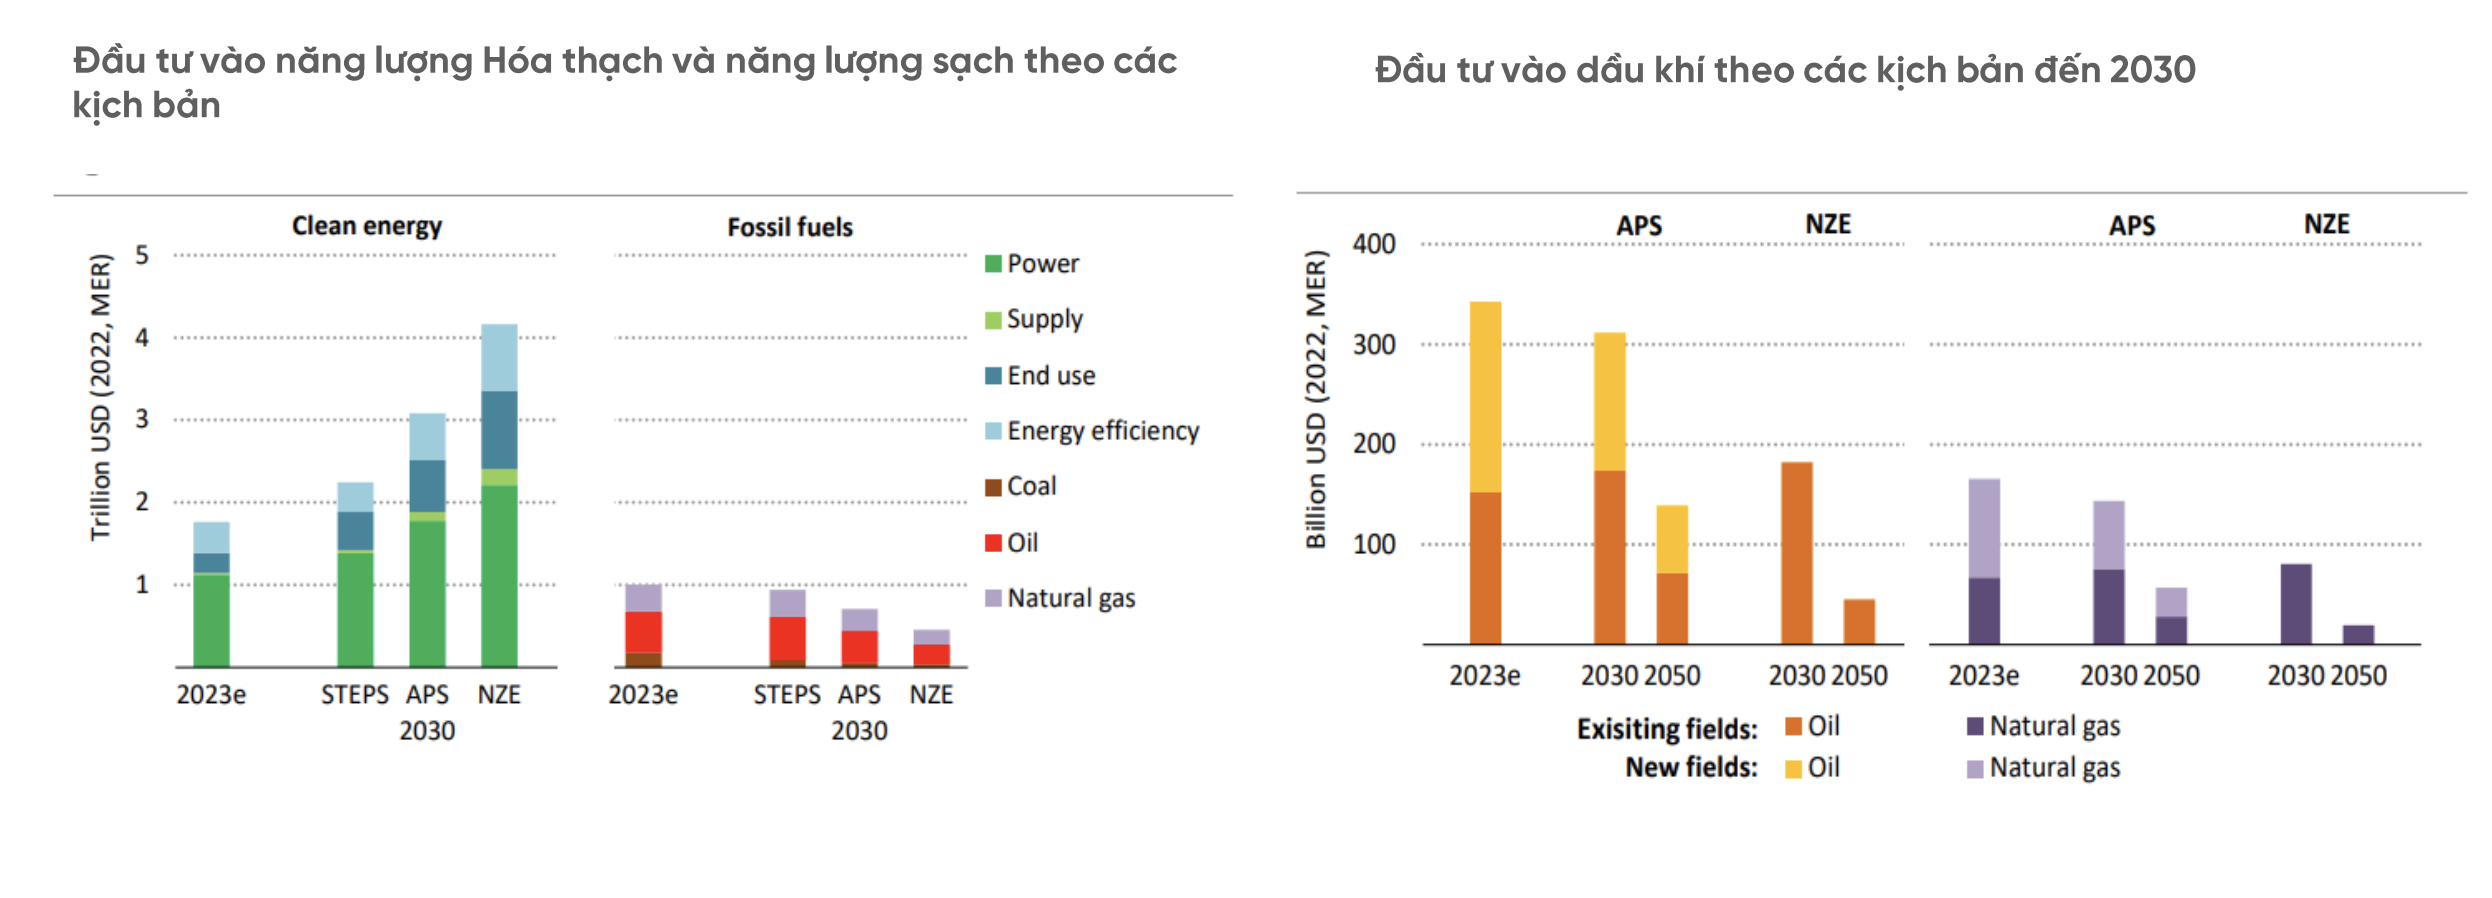 Cổ phiếu ngành dầu khí sẽ tiếp tục bứt phá nhờ hưởng lợi dự án thượng nguồn và điện khí LNG 3